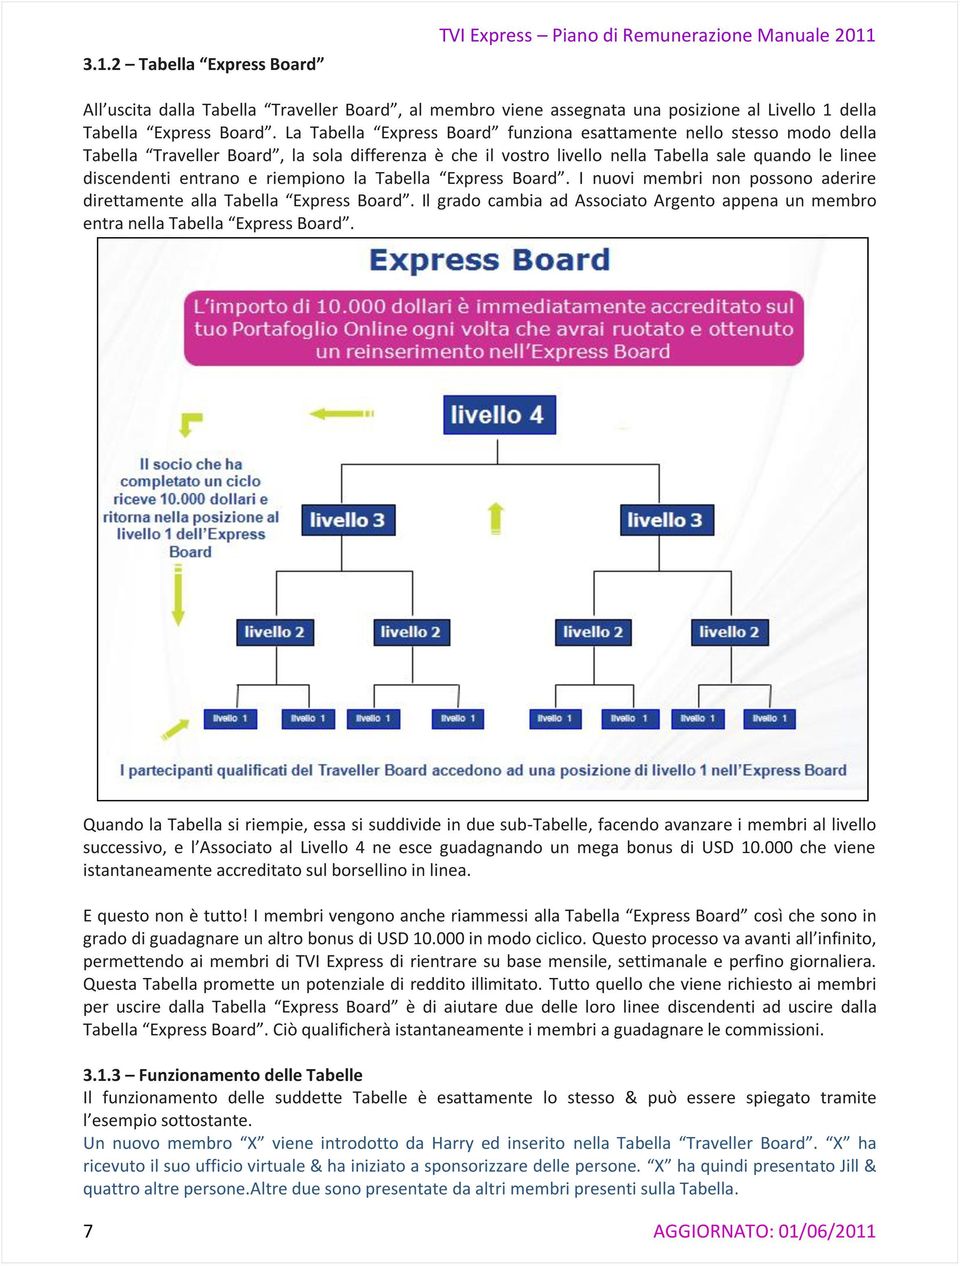 riempiono la Tabella Express Board. I nuovi membri non possono aderire direttamente alla Tabella Express Board. Il grado cambia ad Associato Argento appena un membro entra nella Tabella Express Board.